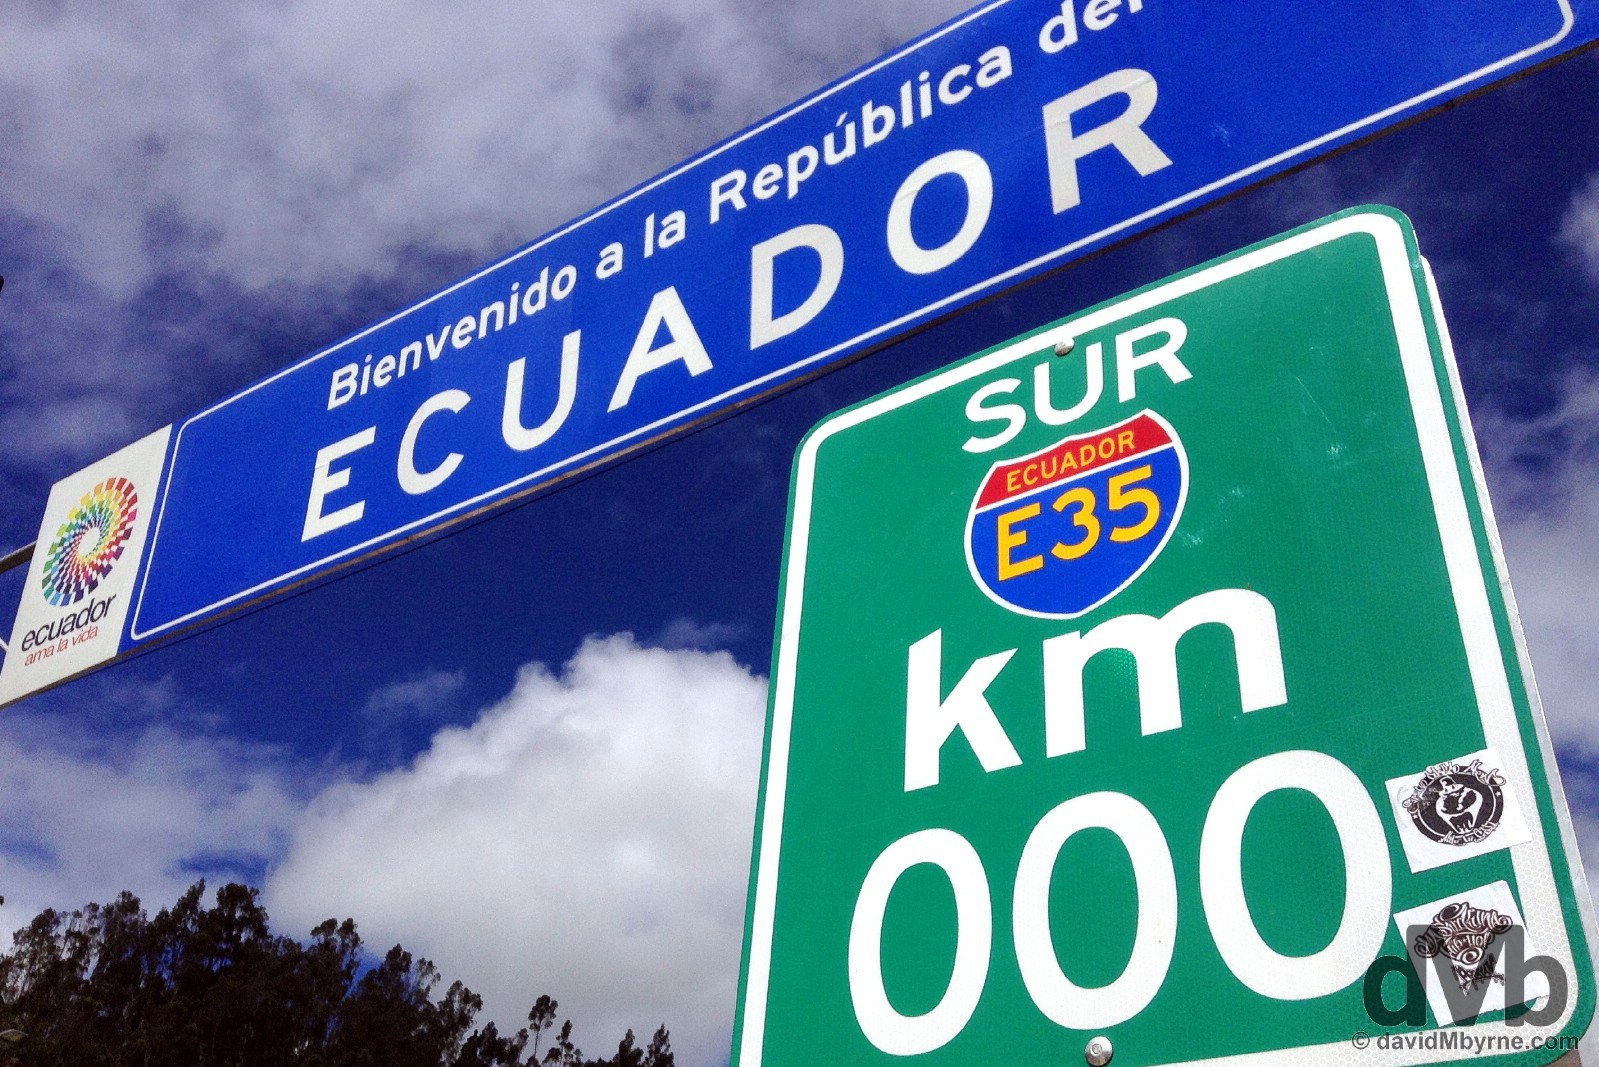 Entering Ecuador at the Rumichaca bridge border crossing with Colombia. July 2, 2105. 